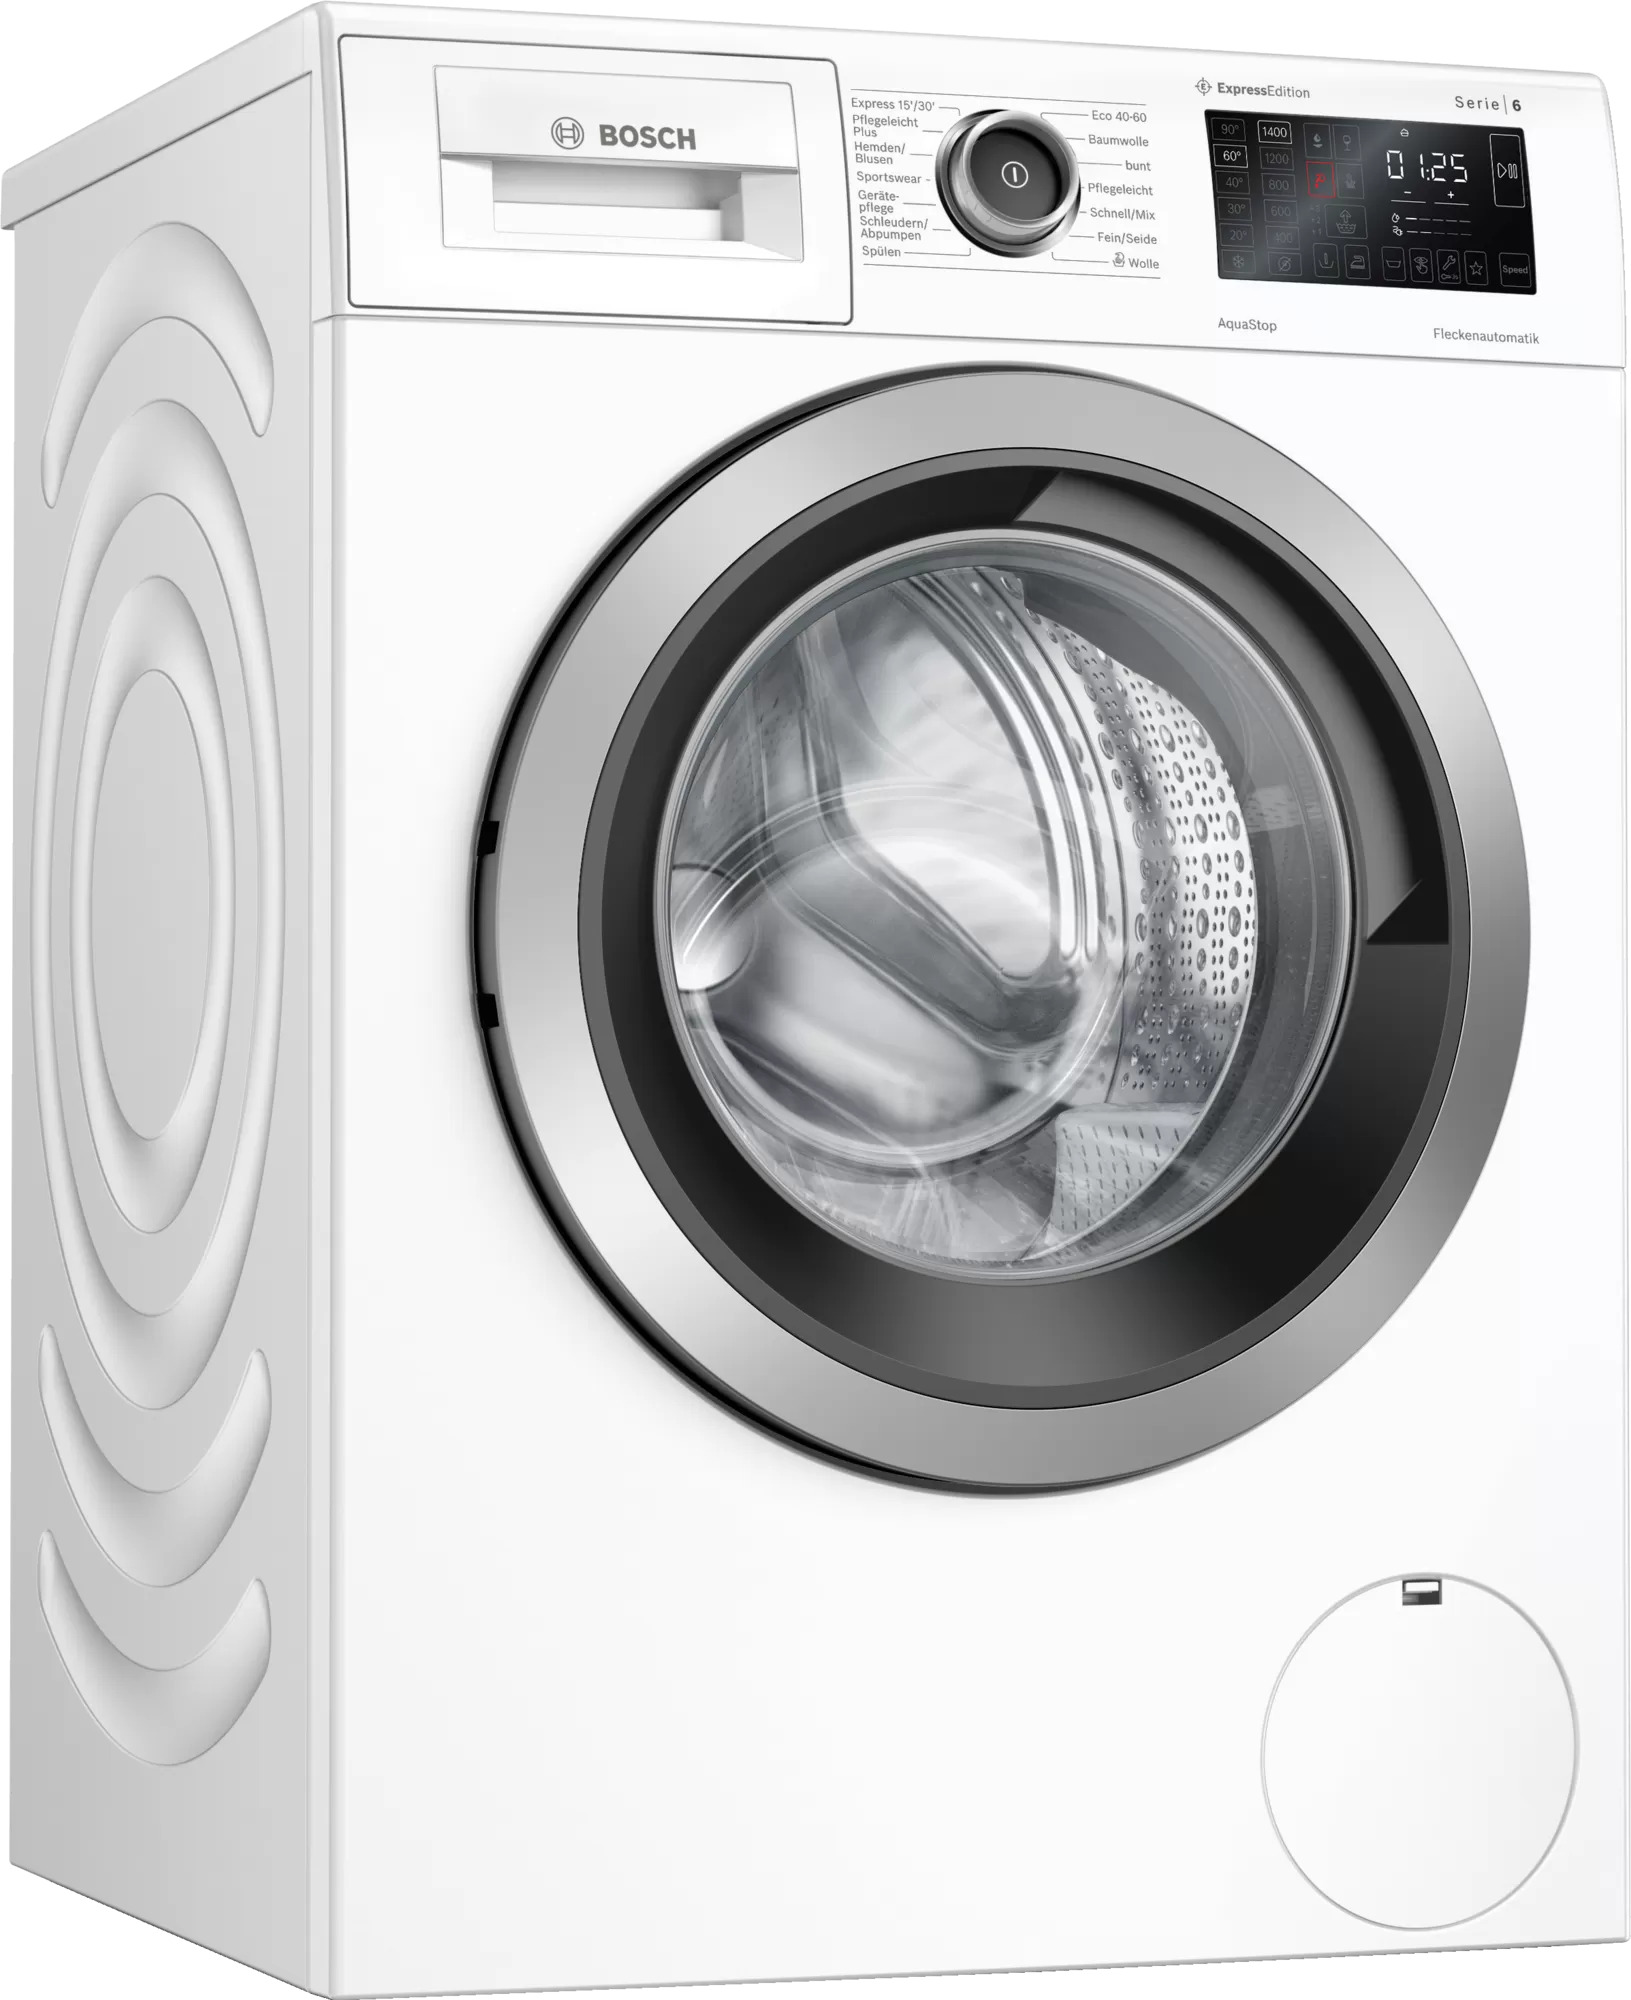 Bosch WAU28RH0 Waschmaschine | Haus weiß Elektronik U/min 9kg der stand - Akatronik 1400